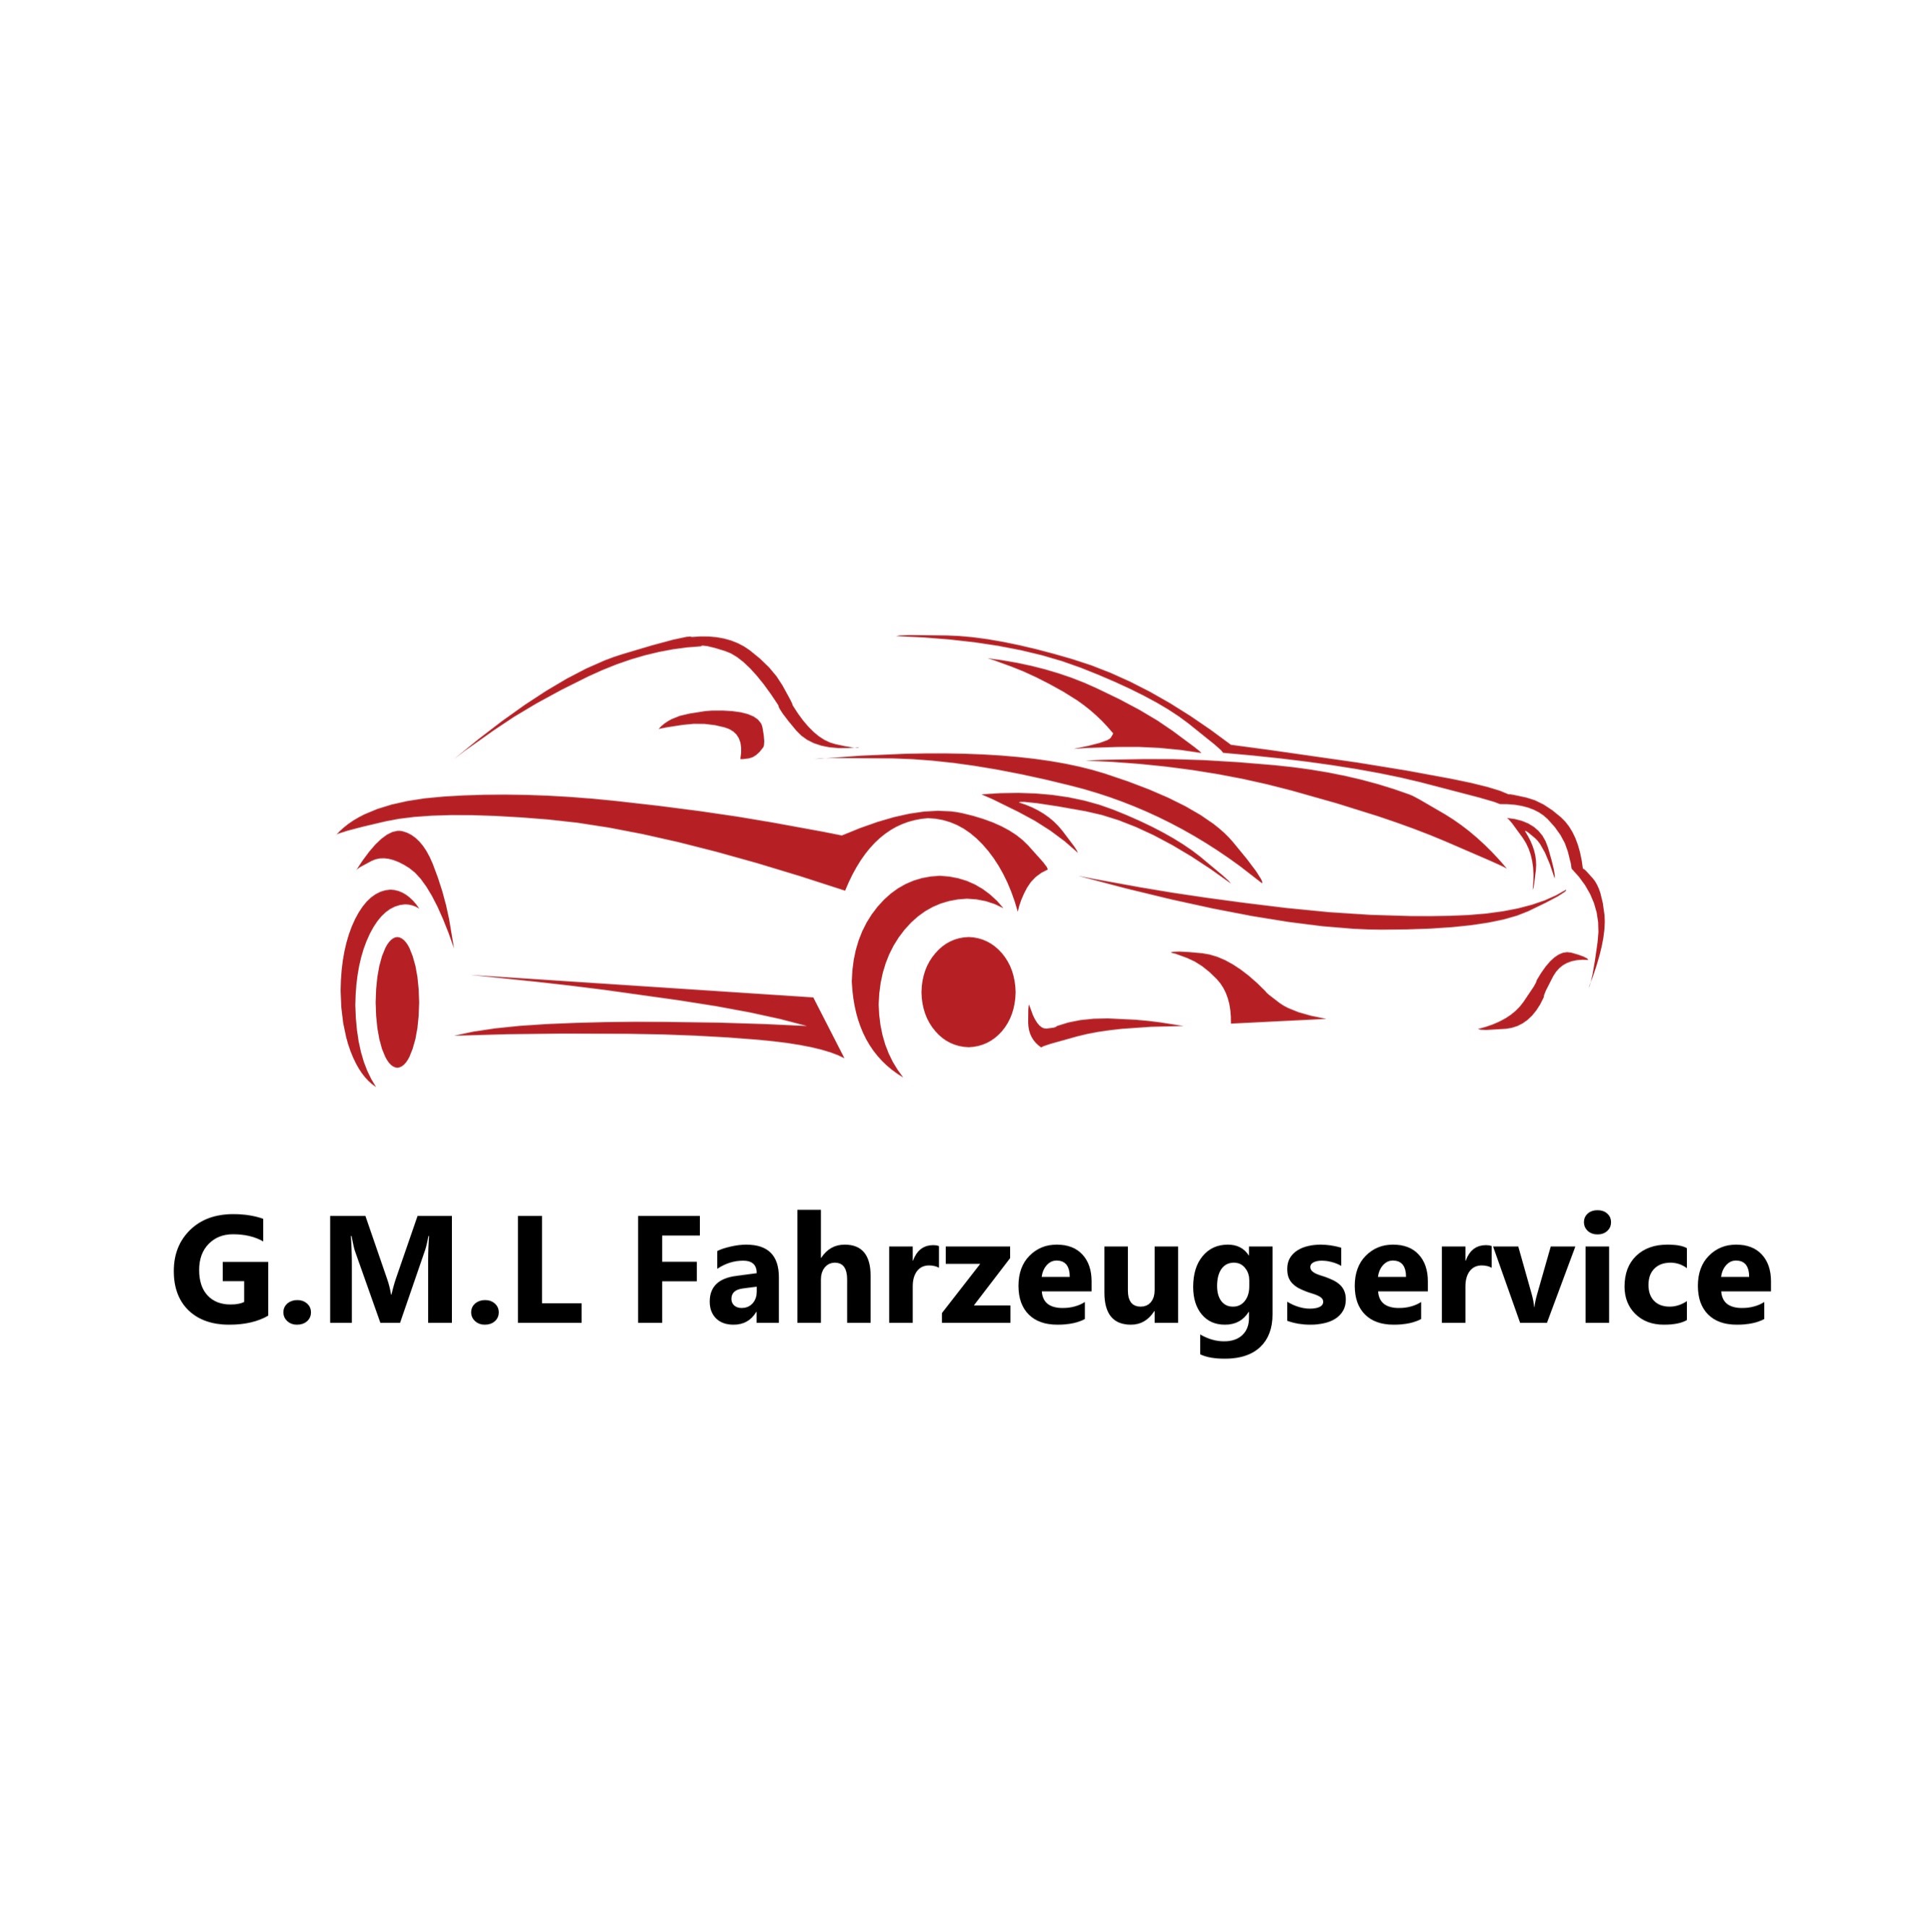 G.M.L. Fahrzeugservice Logo